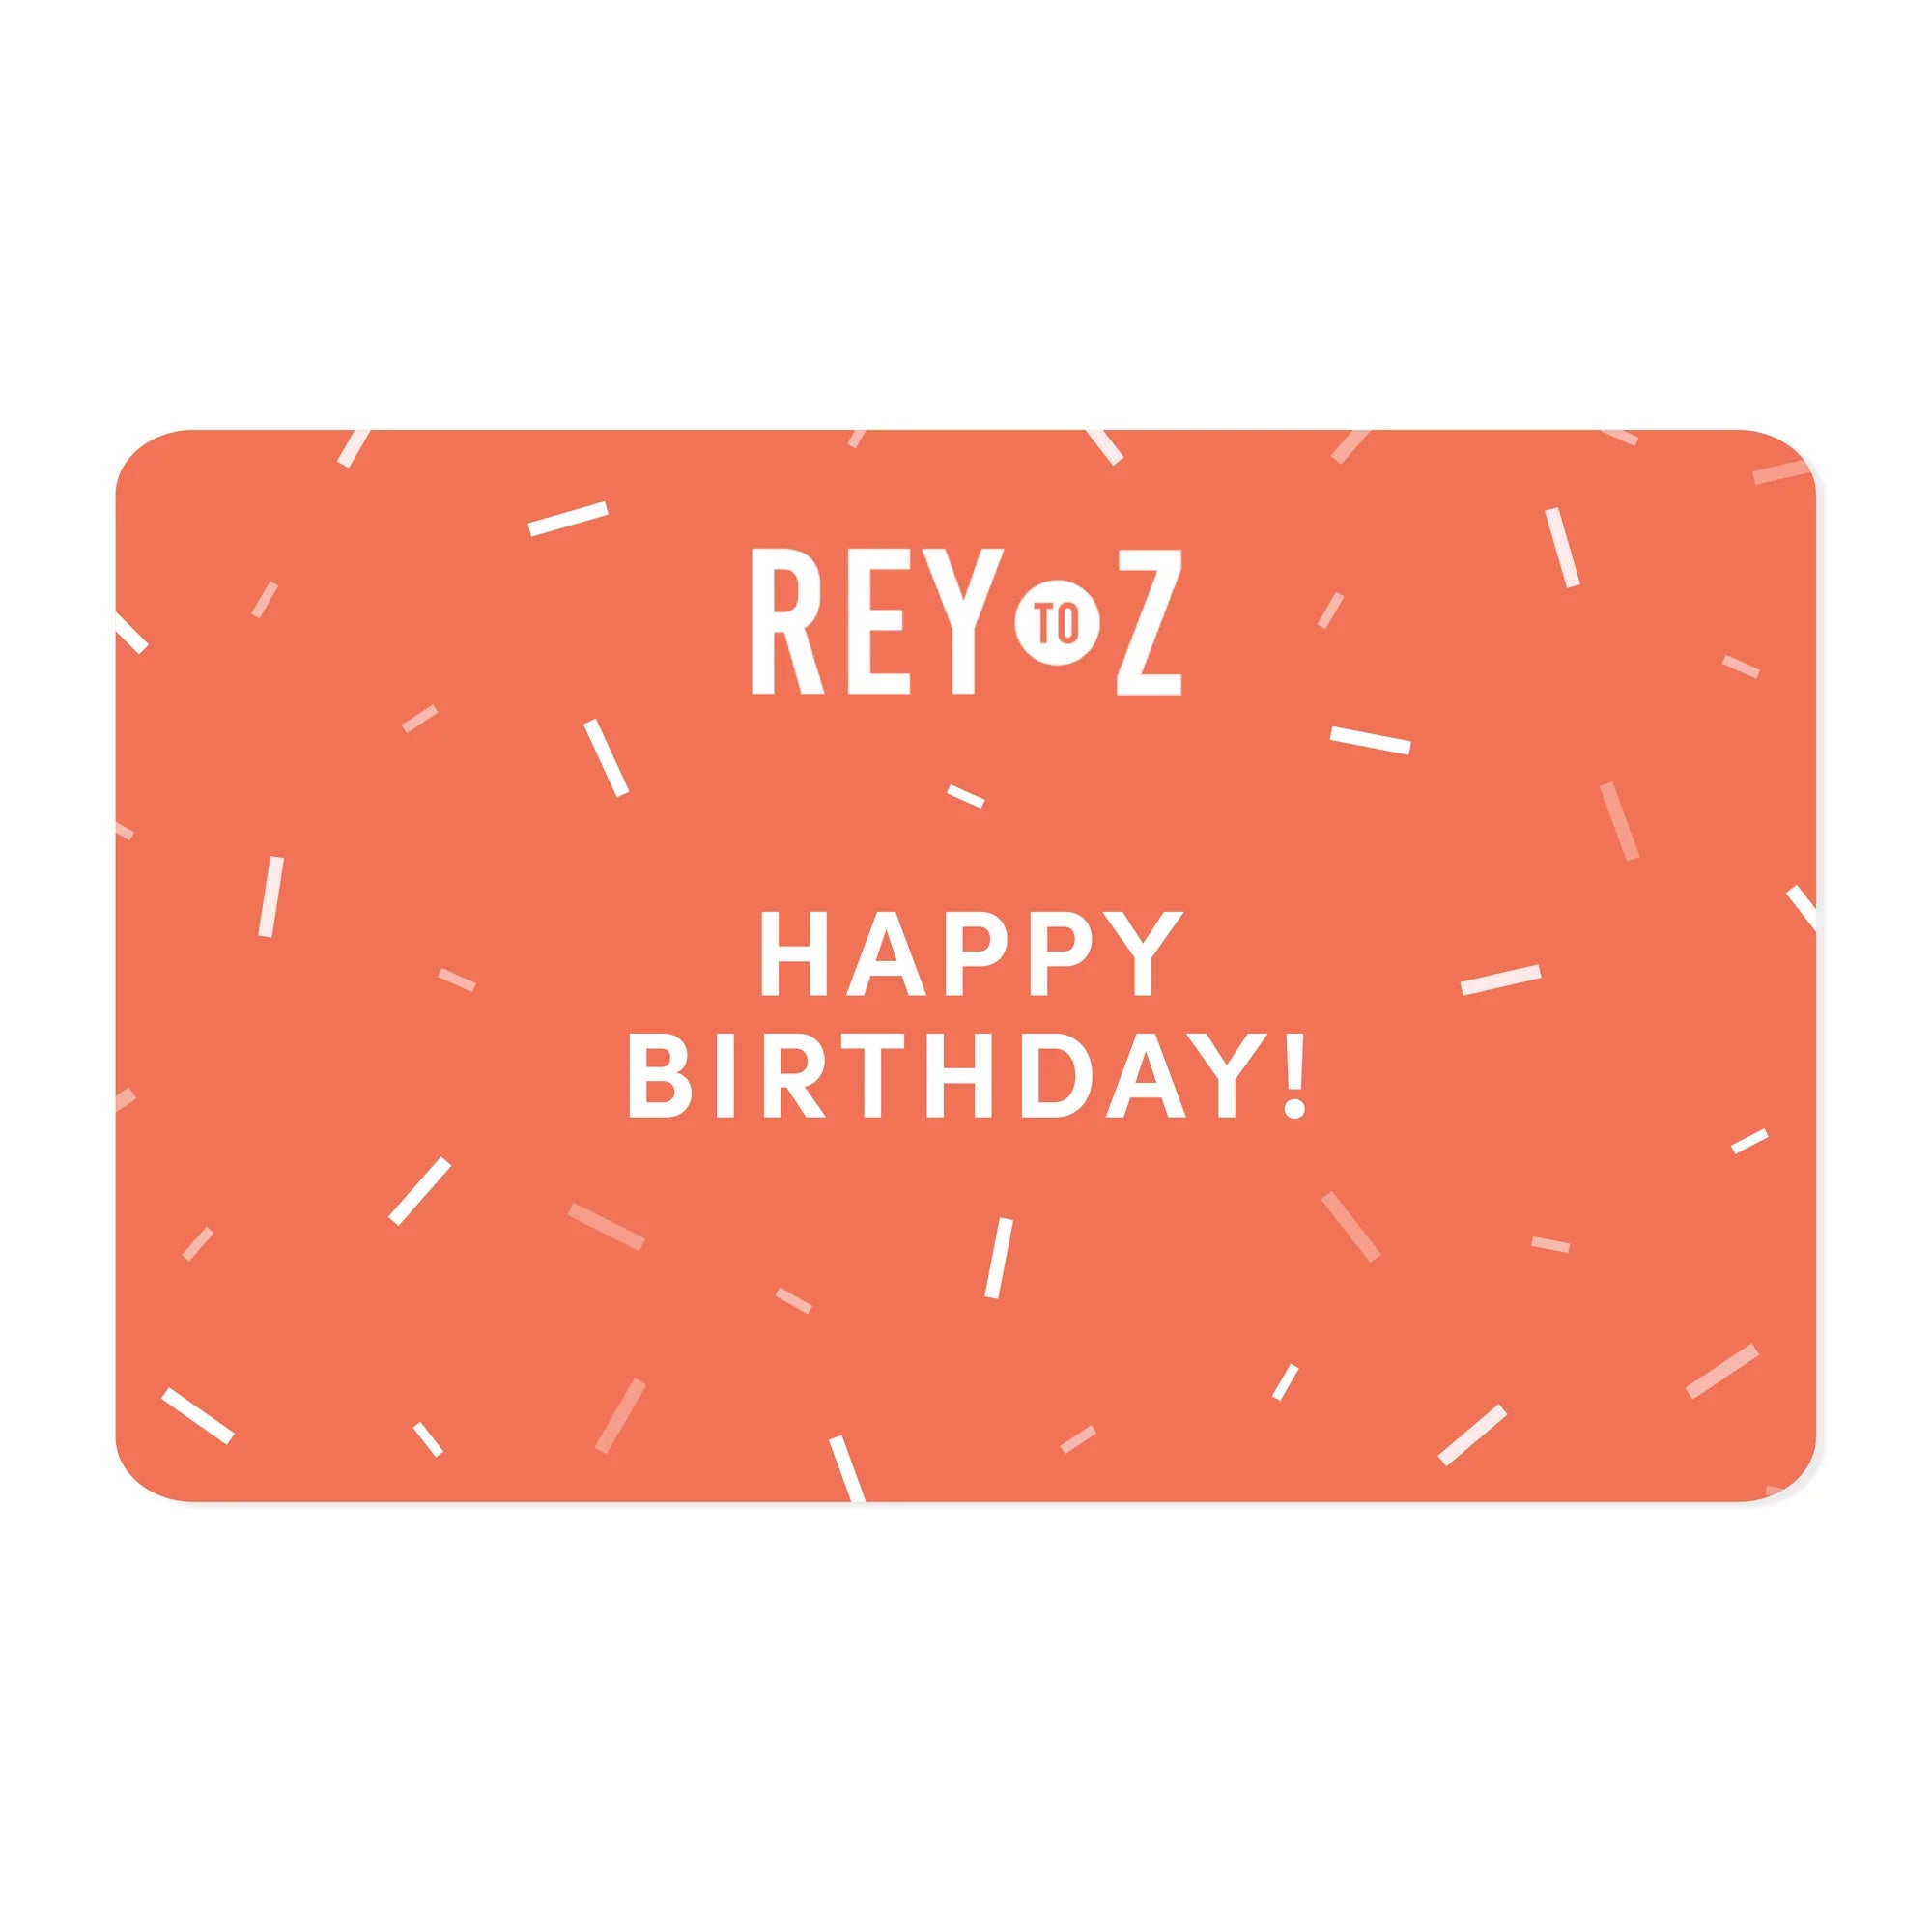 Happy Birthday e-Gift Card